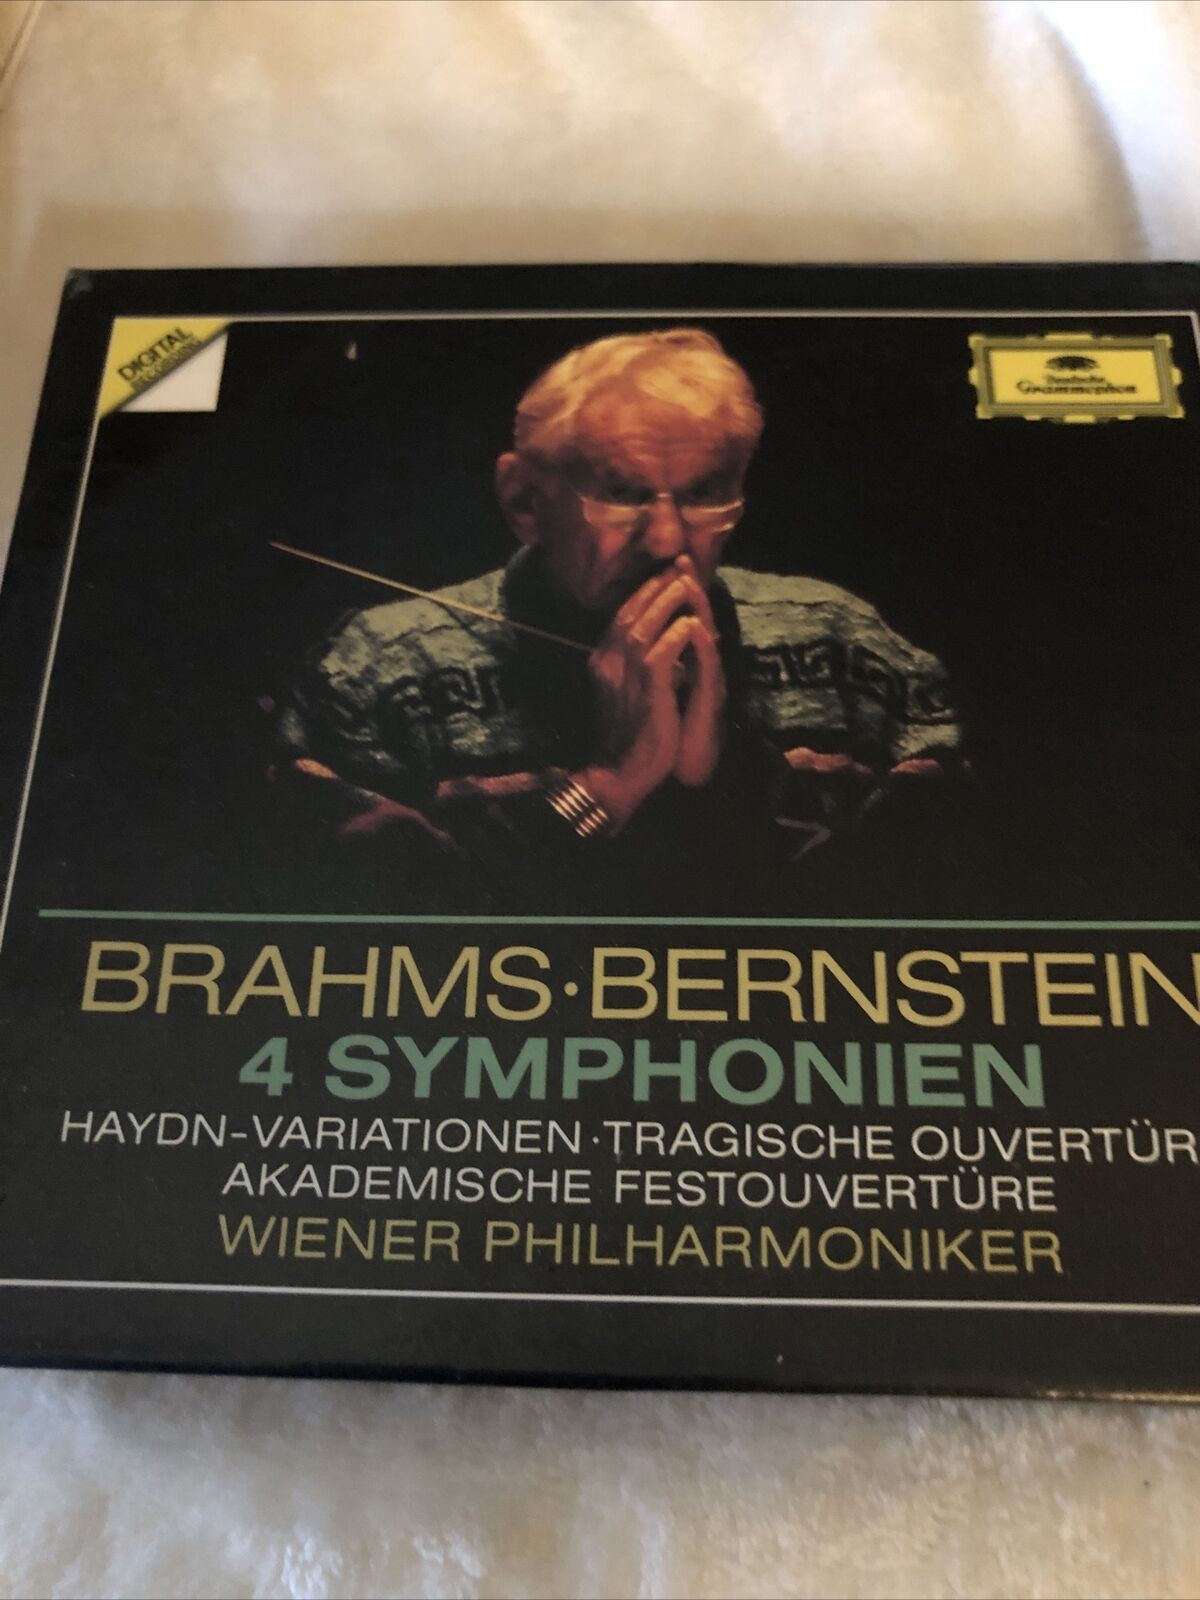 Brahms Bernstein 4 Symphonien  Haydn-Variation CD Box Set